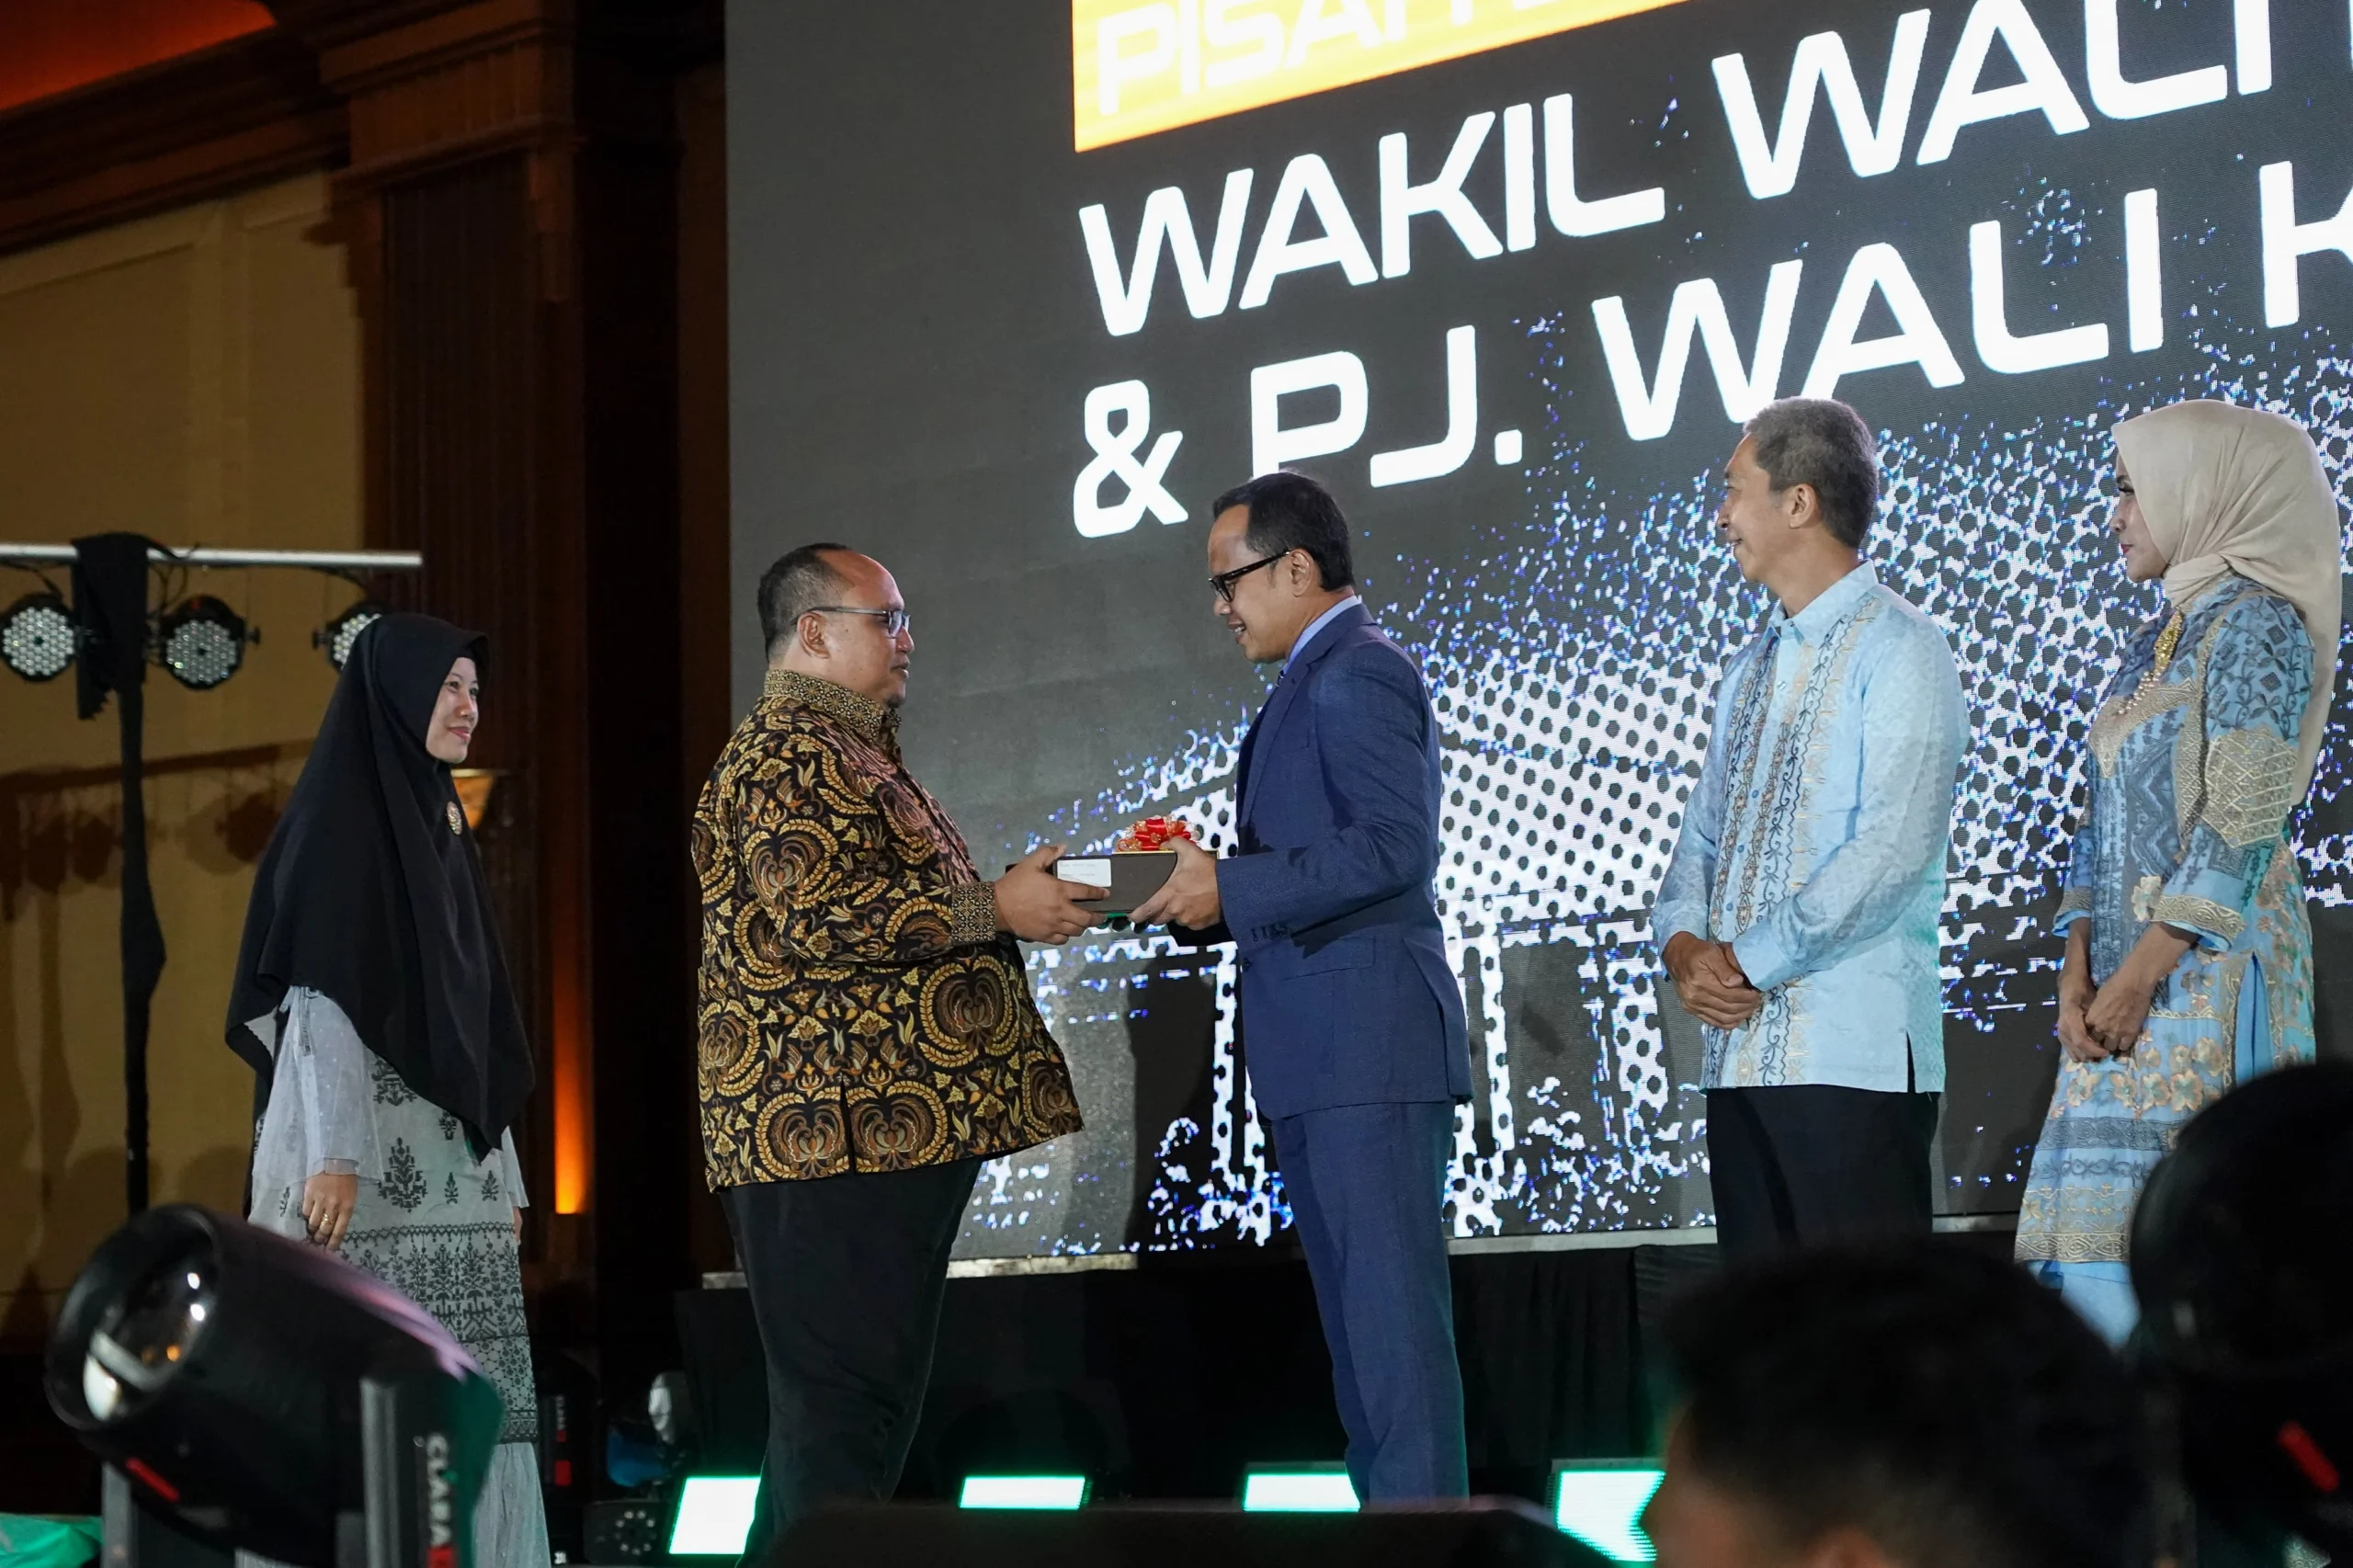 Ketua DPRD Kota Bogor Atang Trisnanto saat menghadiri acara pisah sambut Wali Kota - Wakil Wali Kota dan Pj Wali Kota Bogor. (Foto: Humpro DPRD Kota Bogor)